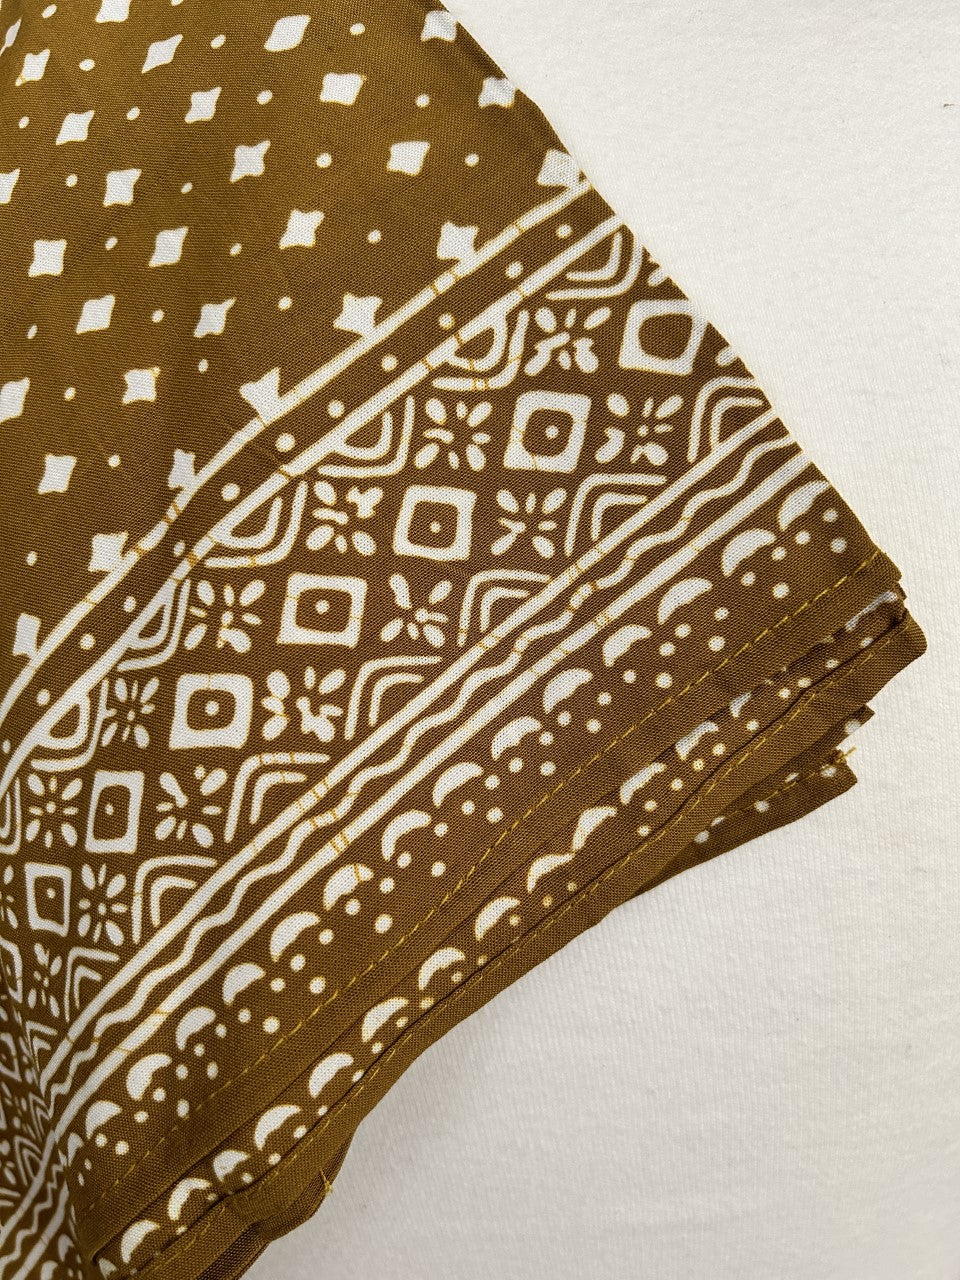 Gold Diamonds Hand Made Batik Sarong/Wrap